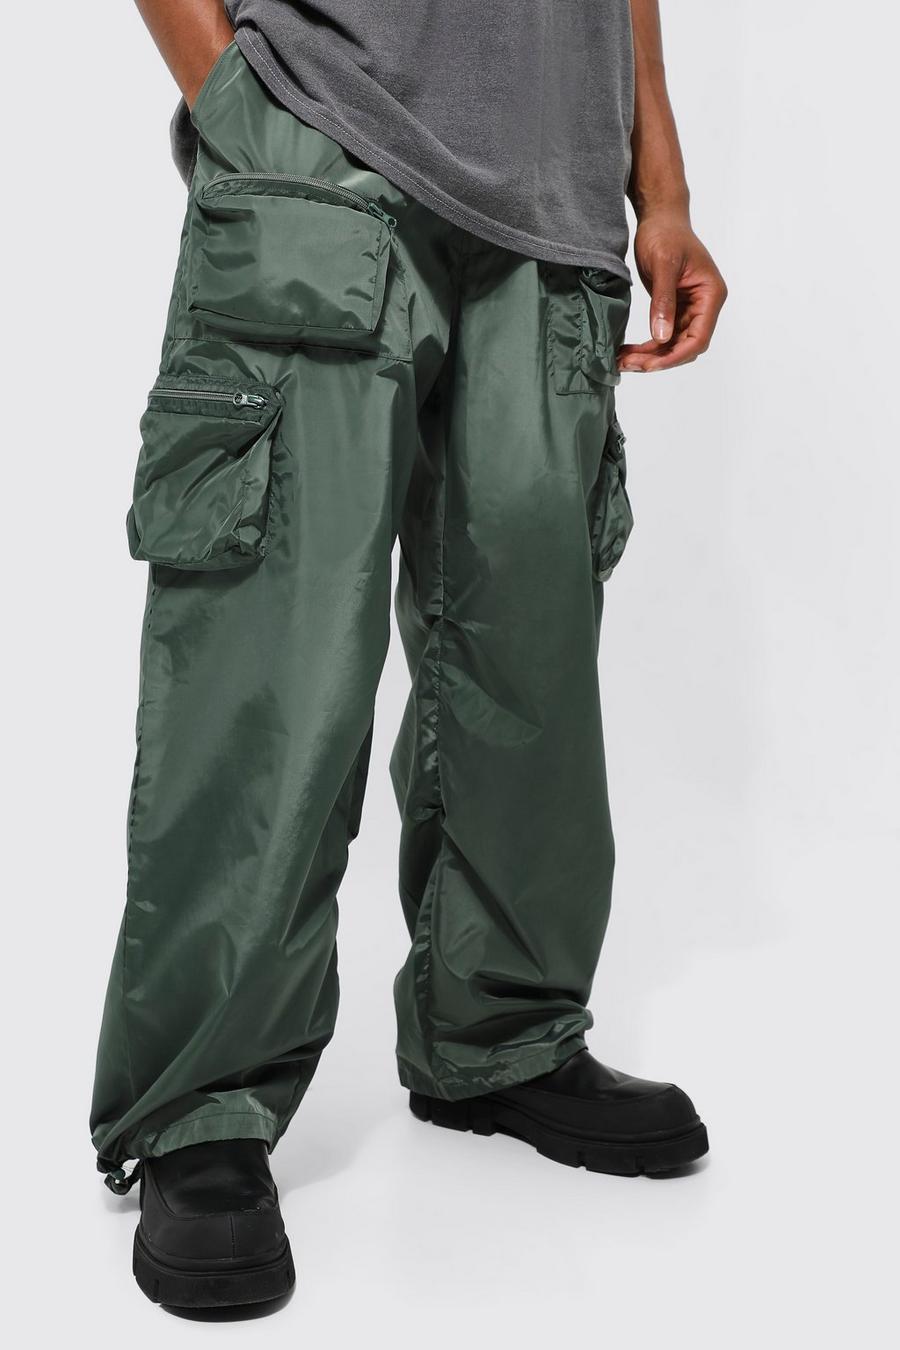 Forest green Elastic Waist Parachute Cargo Trouser